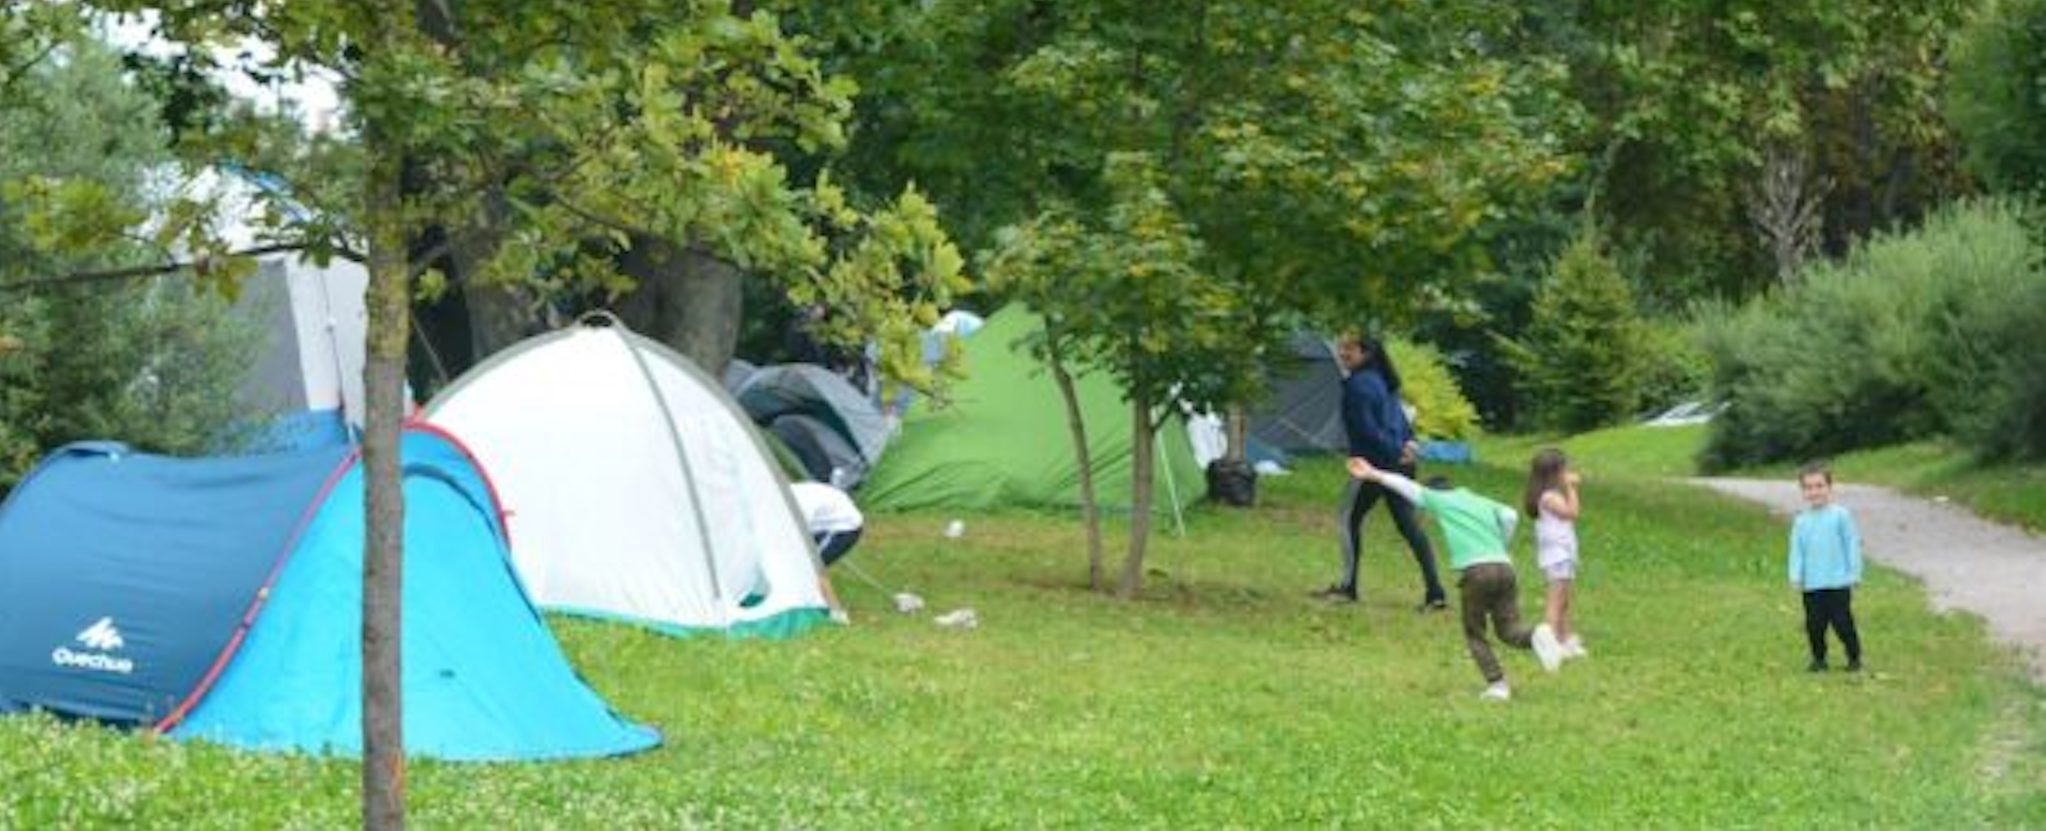 Les riverains du camp de Montagne Verte choqués par l’abandon des réfugiés